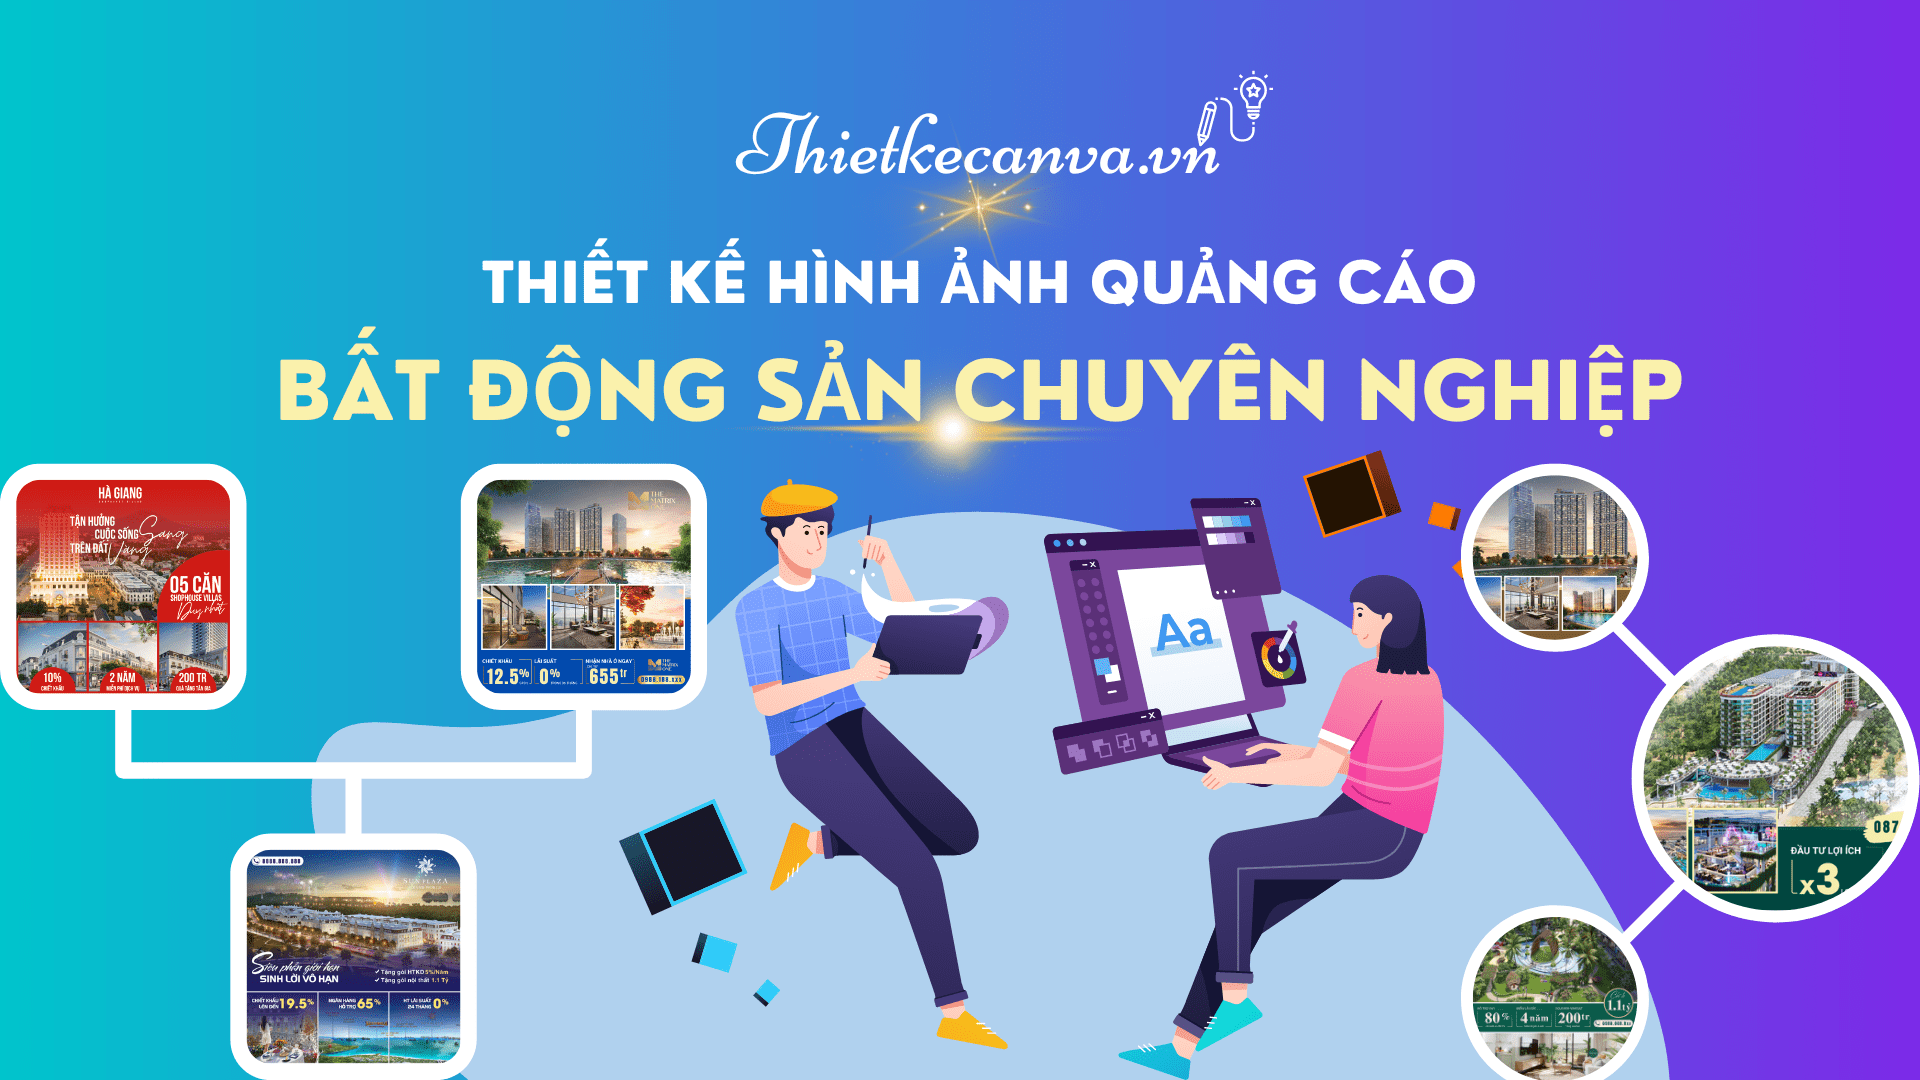 Thiết kế hình ảnh quảng cáo bất động sản chuyên nghiệp thietkecanva.vn - canva pro miễn phí